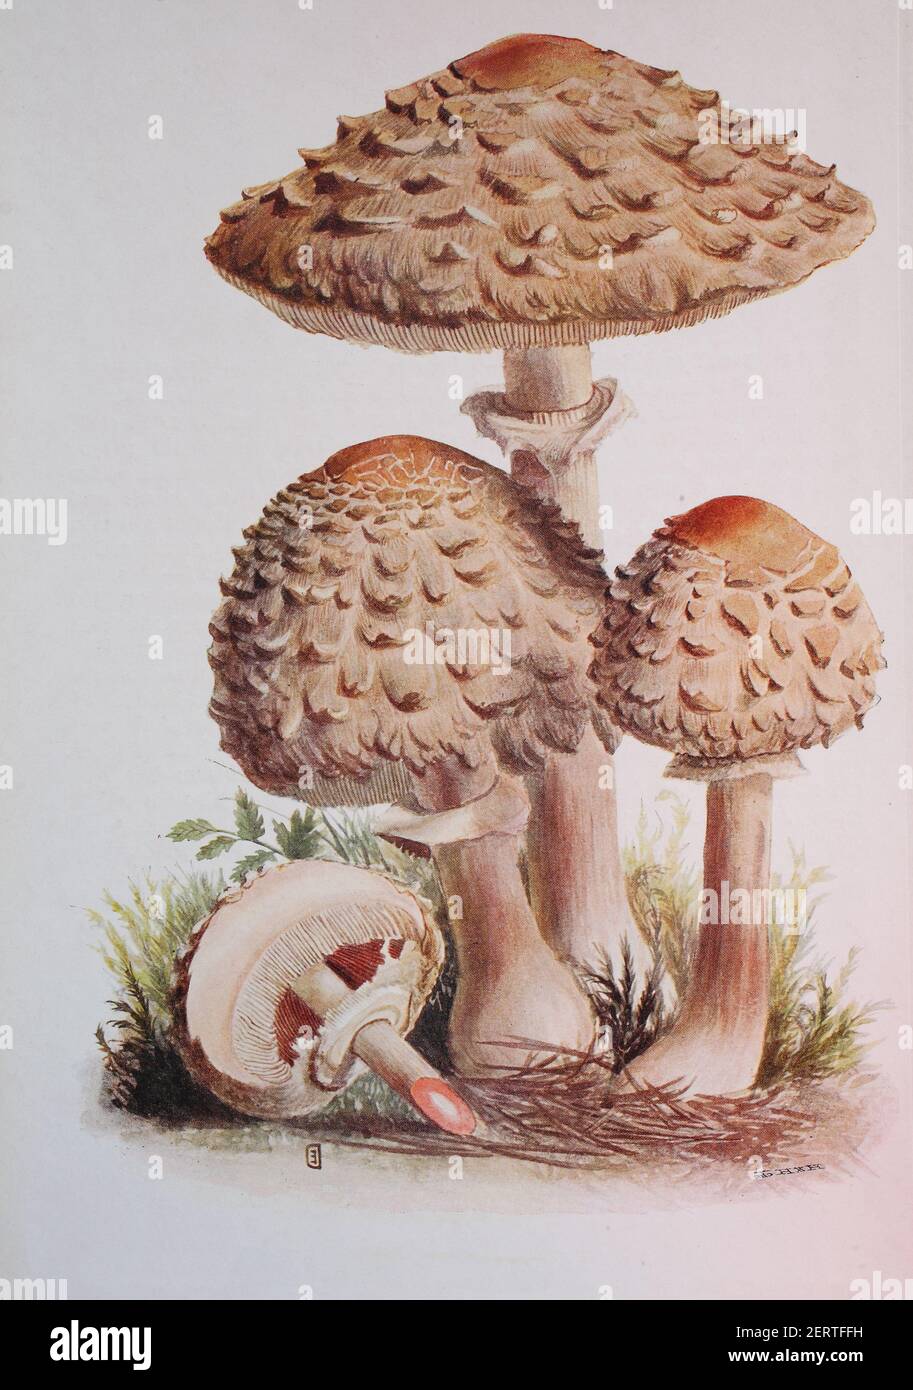 Le parasol de Shaggy est le nom commun de trois espèces étroitement apparentées de champignons, Chlorophyllum rhacodes, C. olivieri et C. brunneum, reproduction numérique d'une ilustration d'Emil Doerstling (1859-1940) Banque D'Images